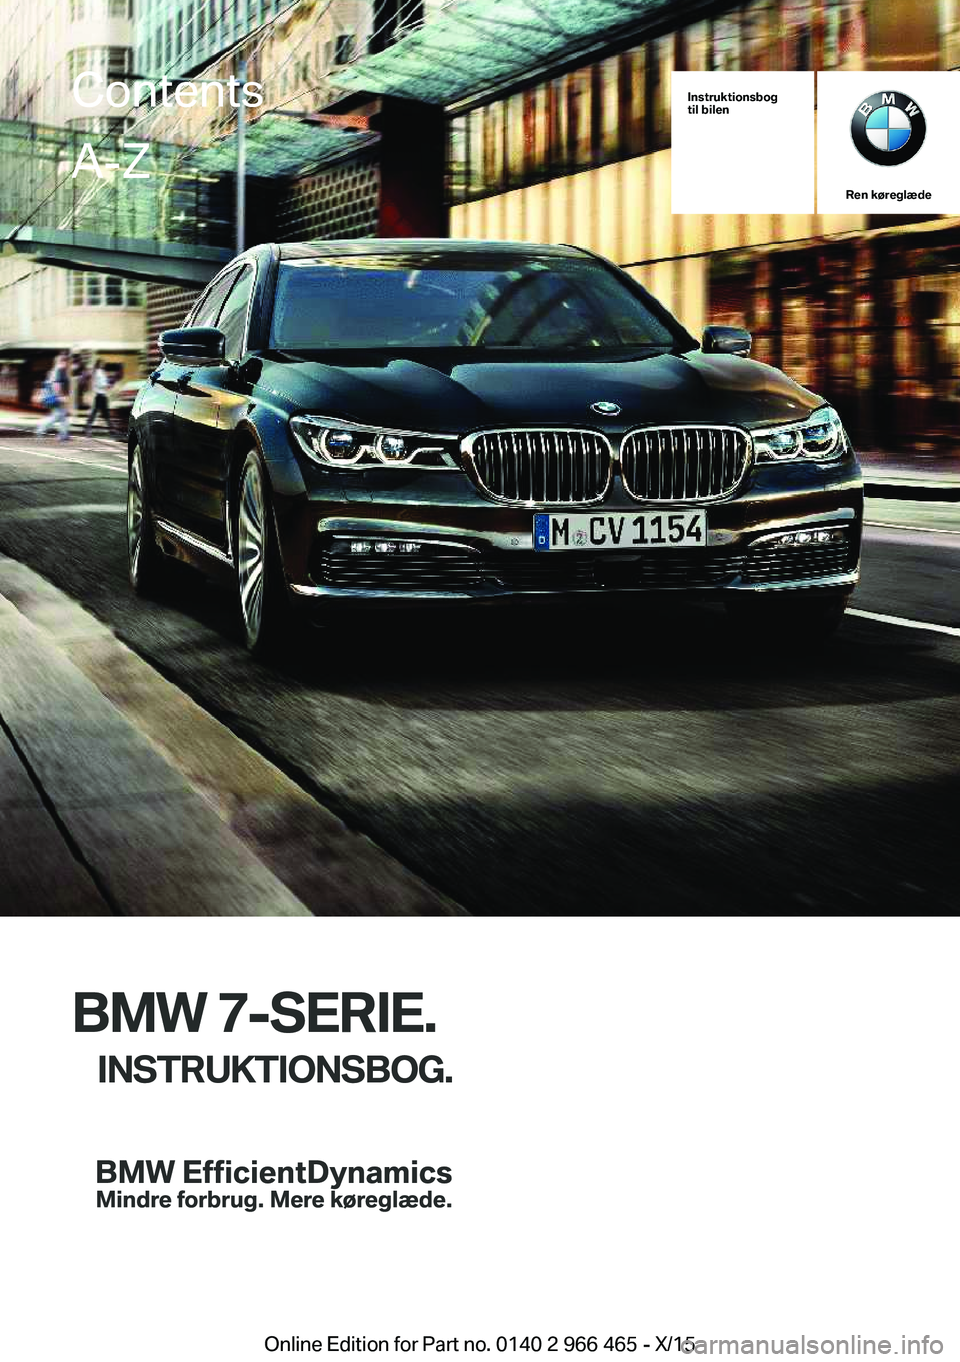 BMW 7 SERIES 2016  InstruktionsbØger (in Danish) Instruktionsbog
til bilen
Ren køreglæde
BMW 7-SERIE.
INSTRUKTIONSBOG.
ContentsA-Z
Online Edition for Part no. 0140 2 966 465 - X/15   